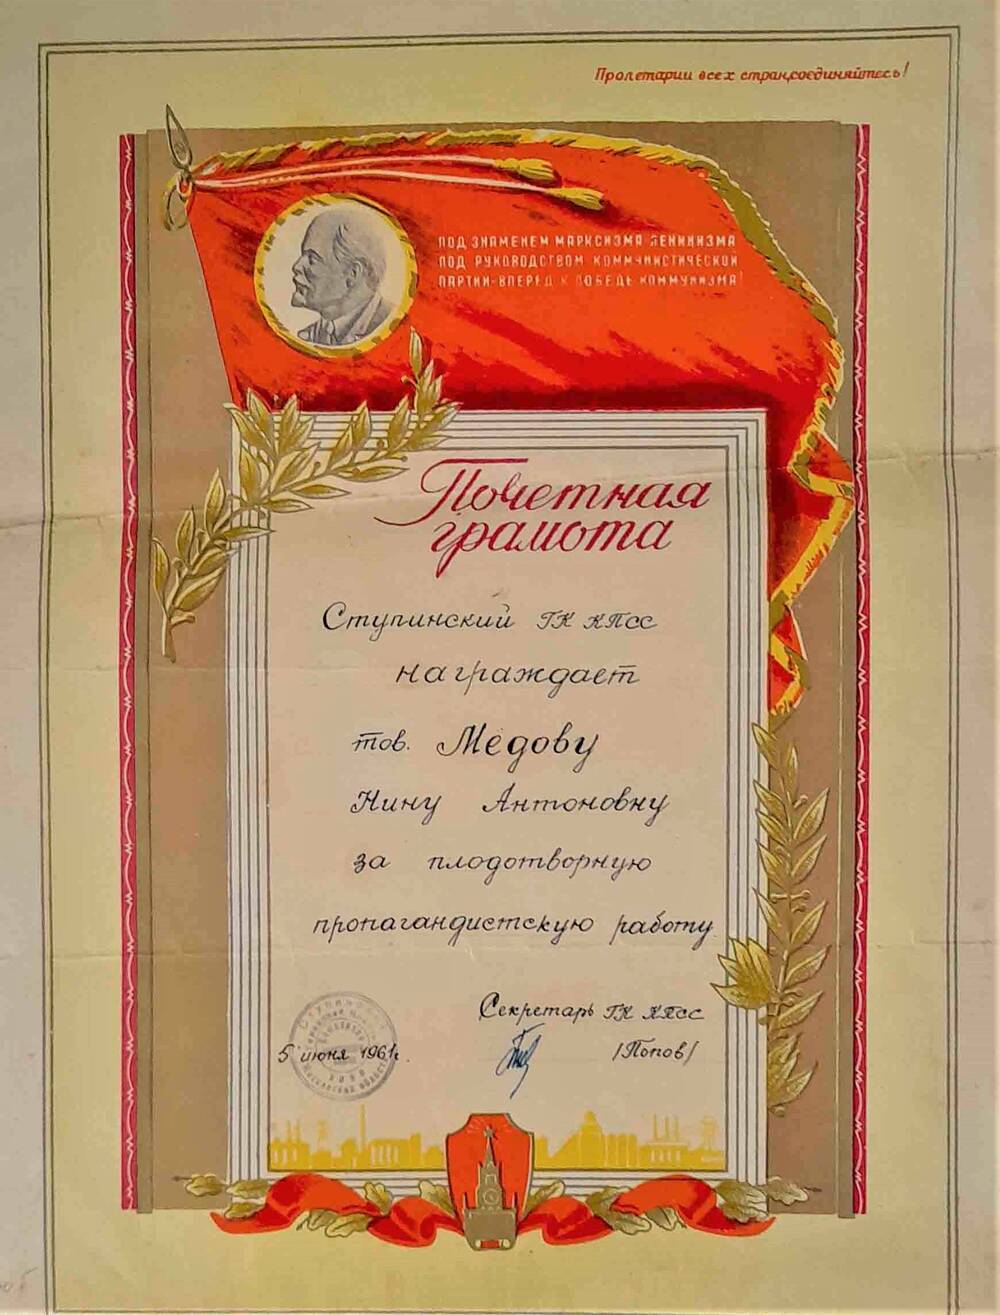 Почетная грамота Медовой Н.А. от ступинского горкома КПСС за плодотворную пропагандистскую работу